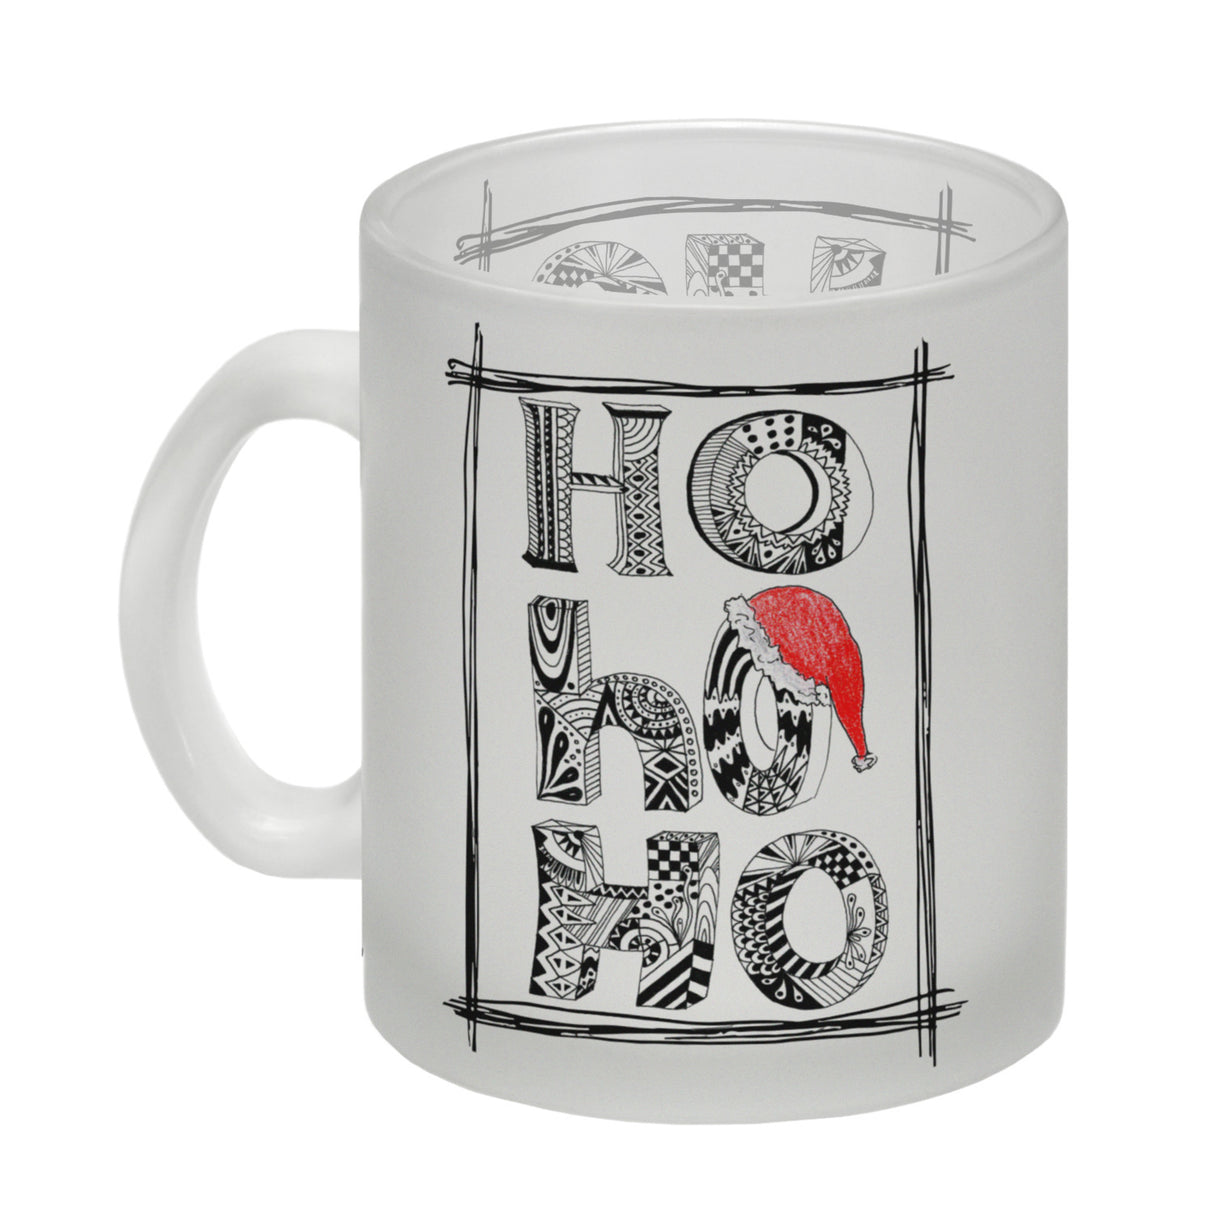 Ho Ho Ho Kaffeebecher mit Weihnachtsmotiv